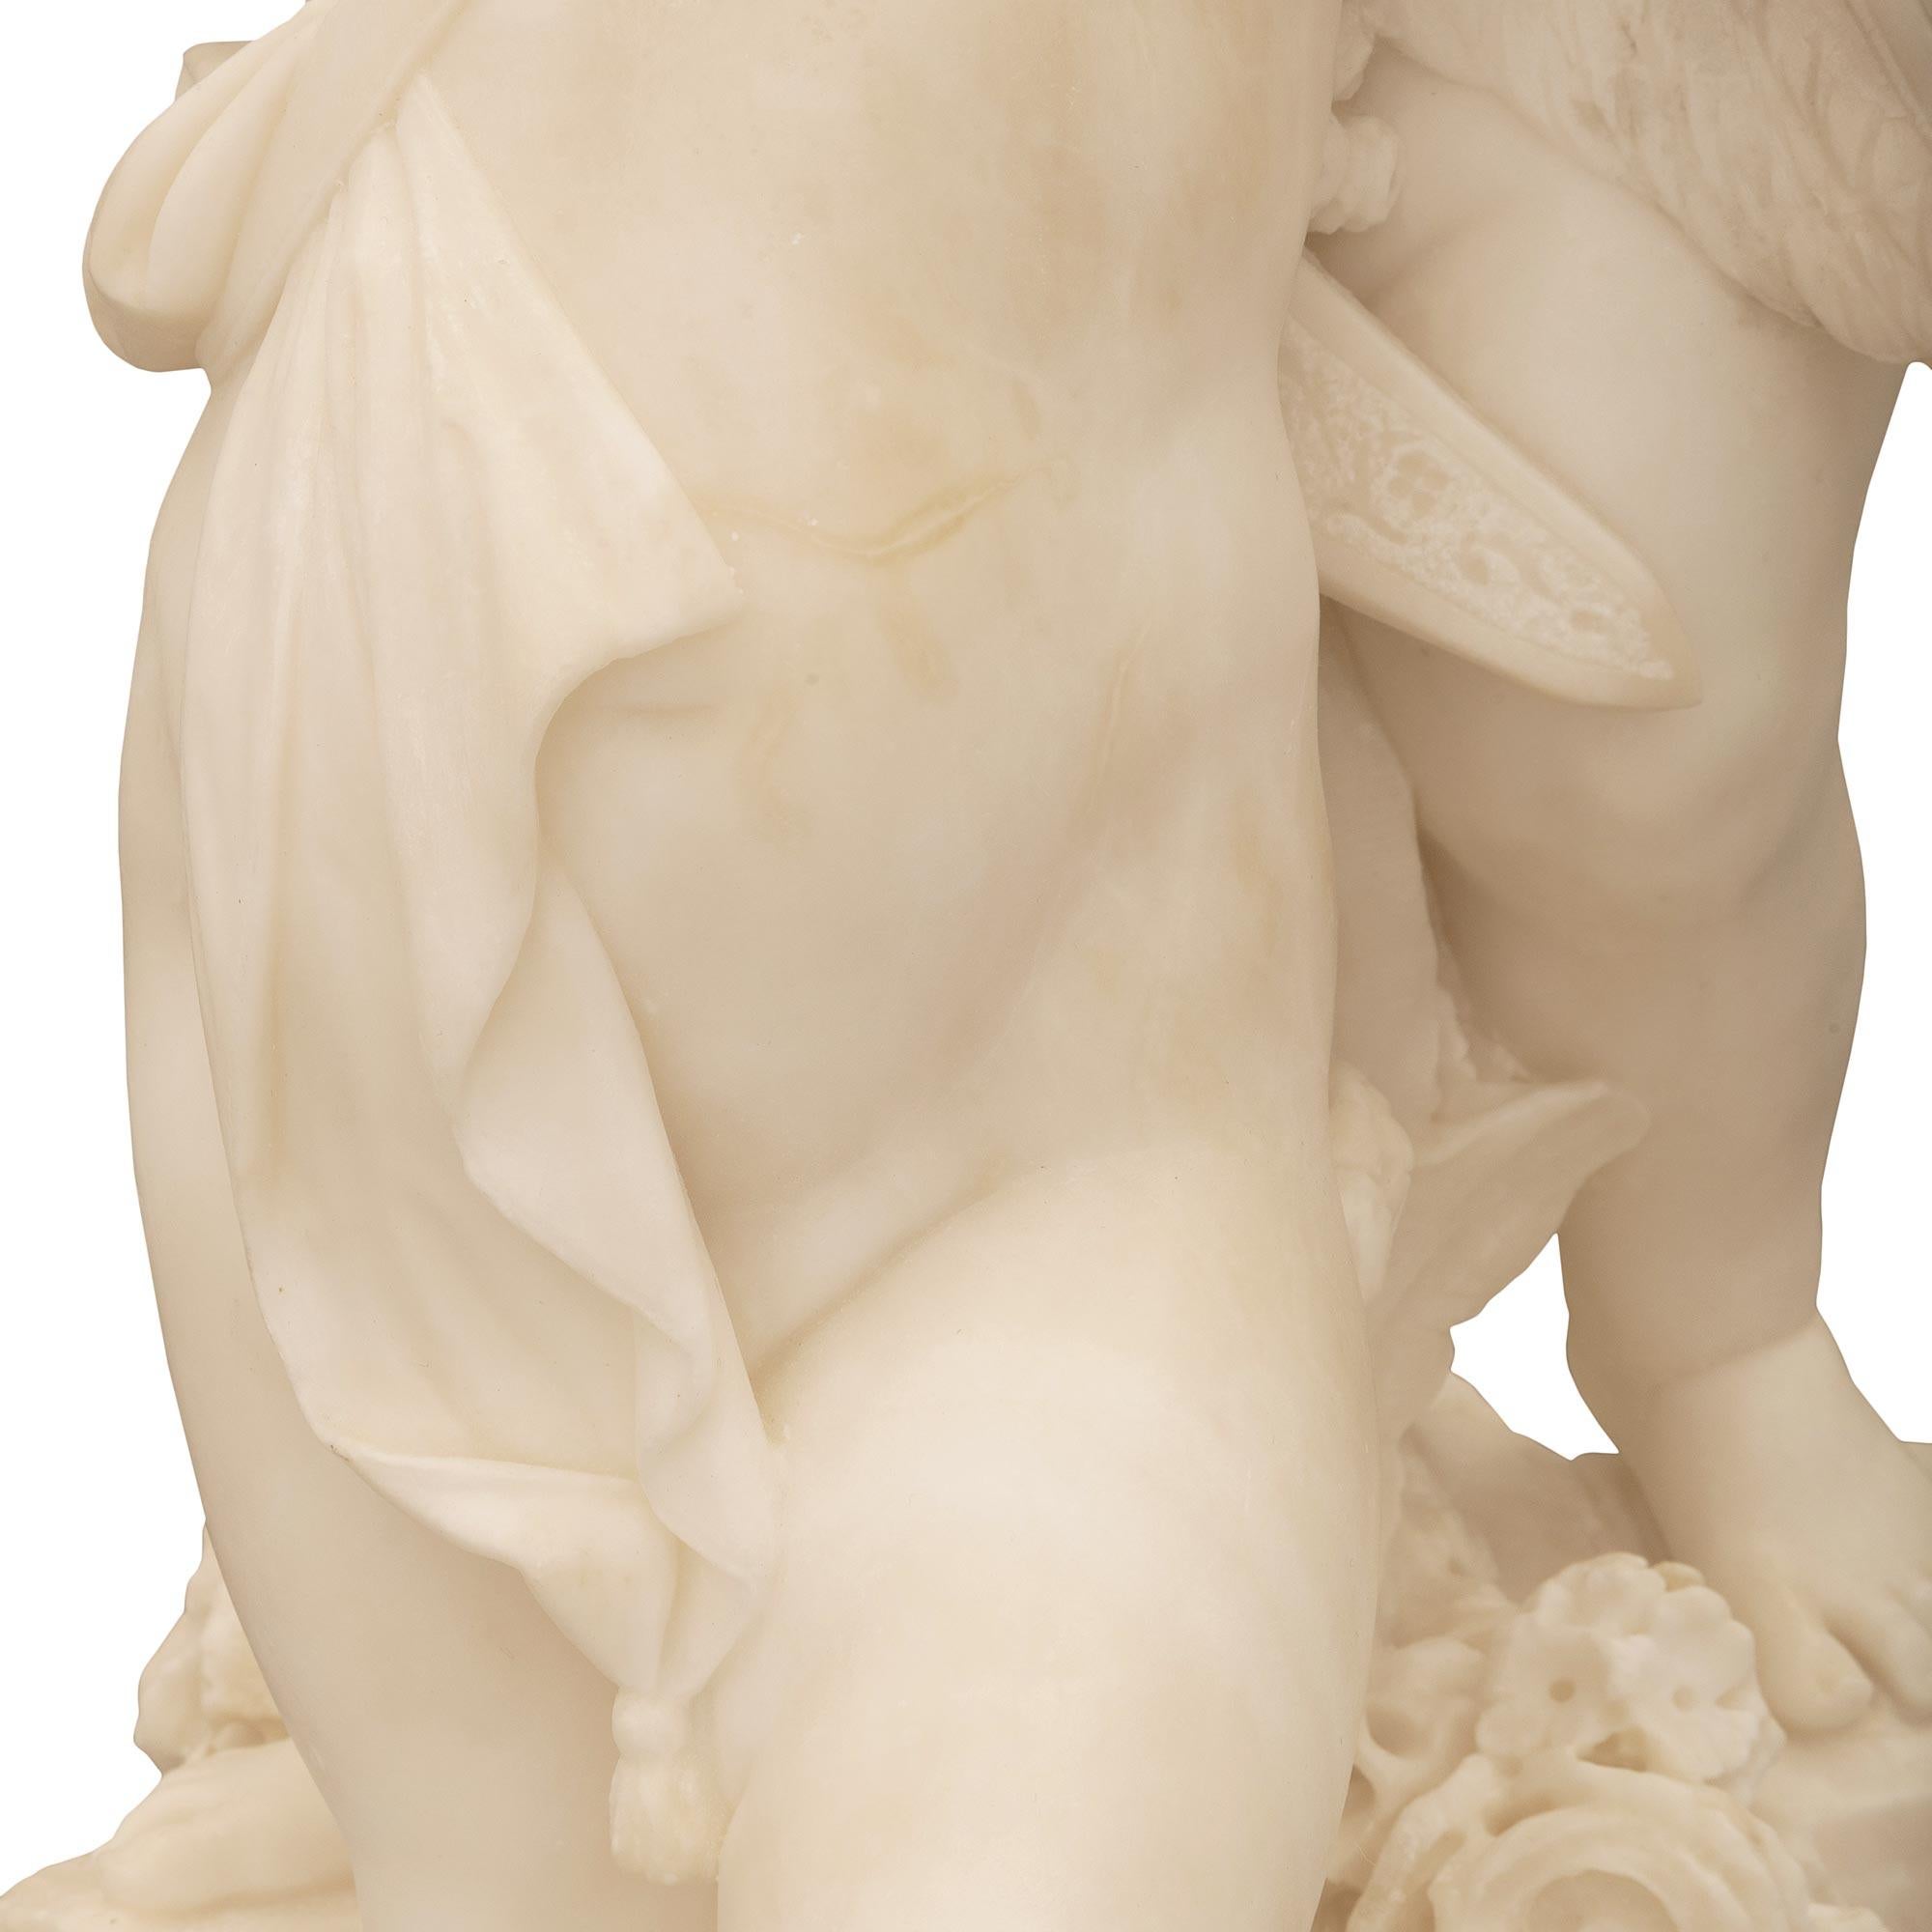 Italian 19th Century White Carrara Marble Statue Titled “Amore Sdegnato” For Sale 6